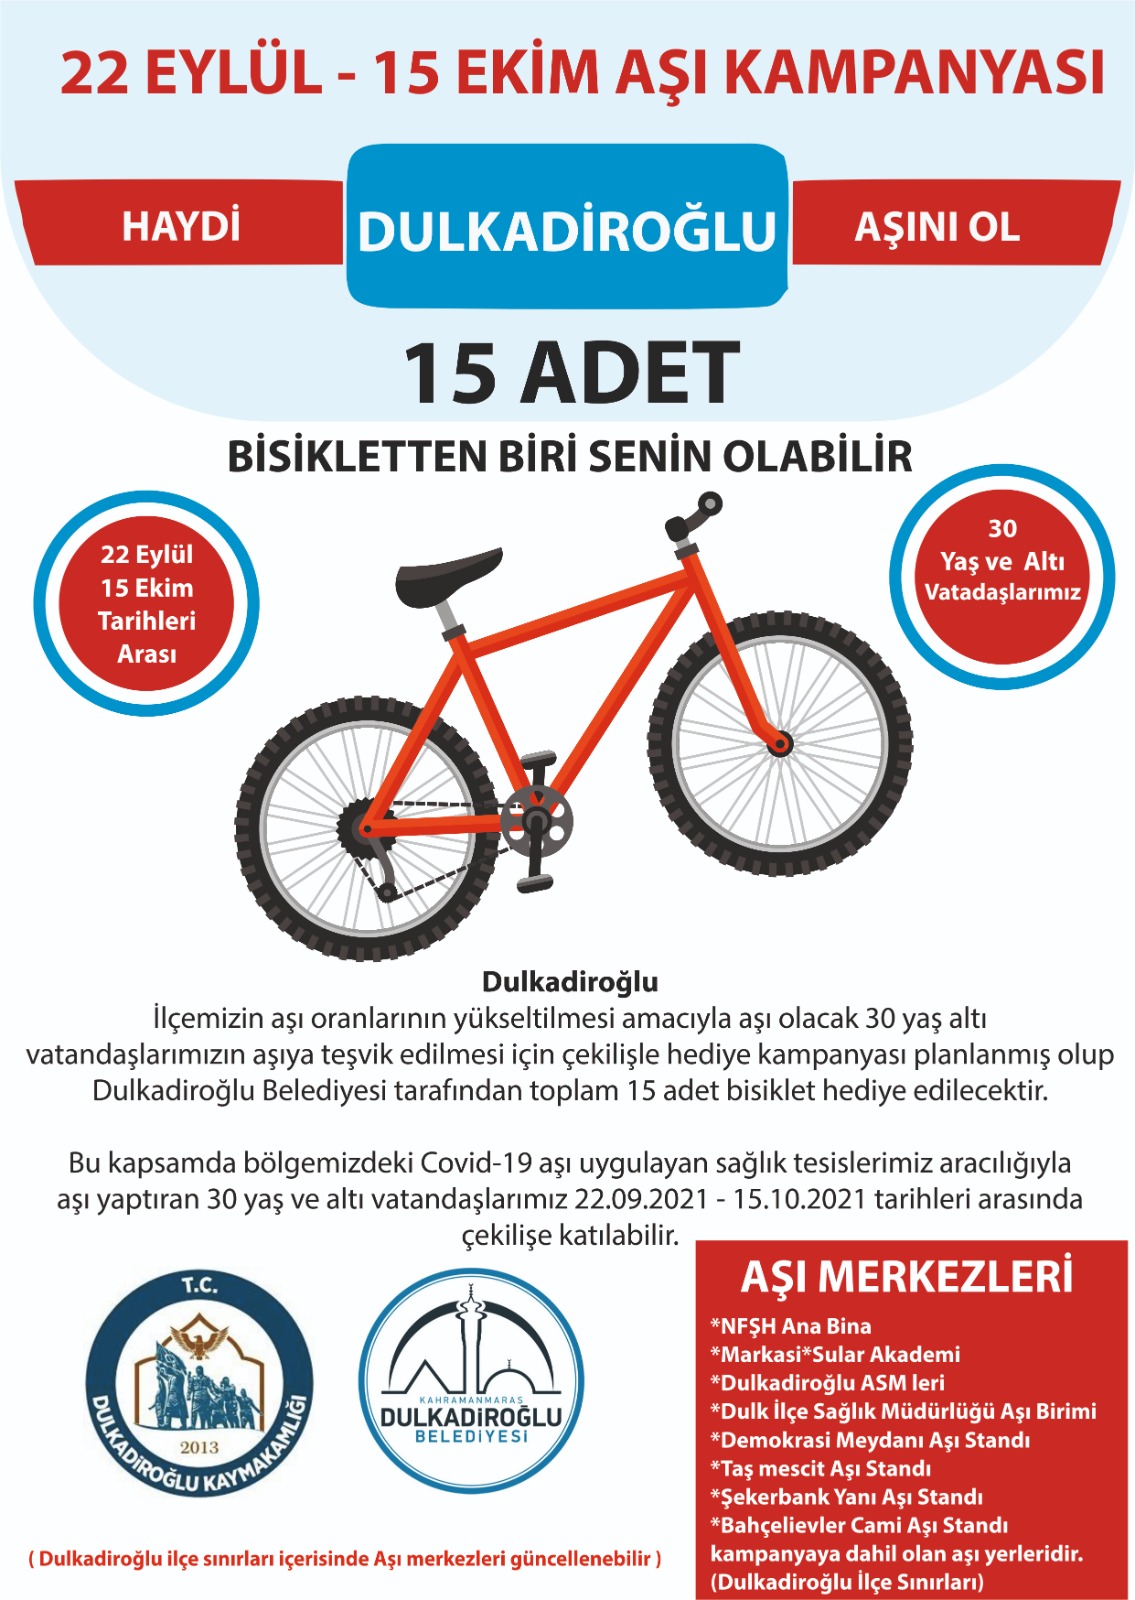 Dulkadiroğlu Belediyesi ve Dulkadiroğlu Kaymakamlığı iş birliğiyle aşı kampanyası düzenlendi